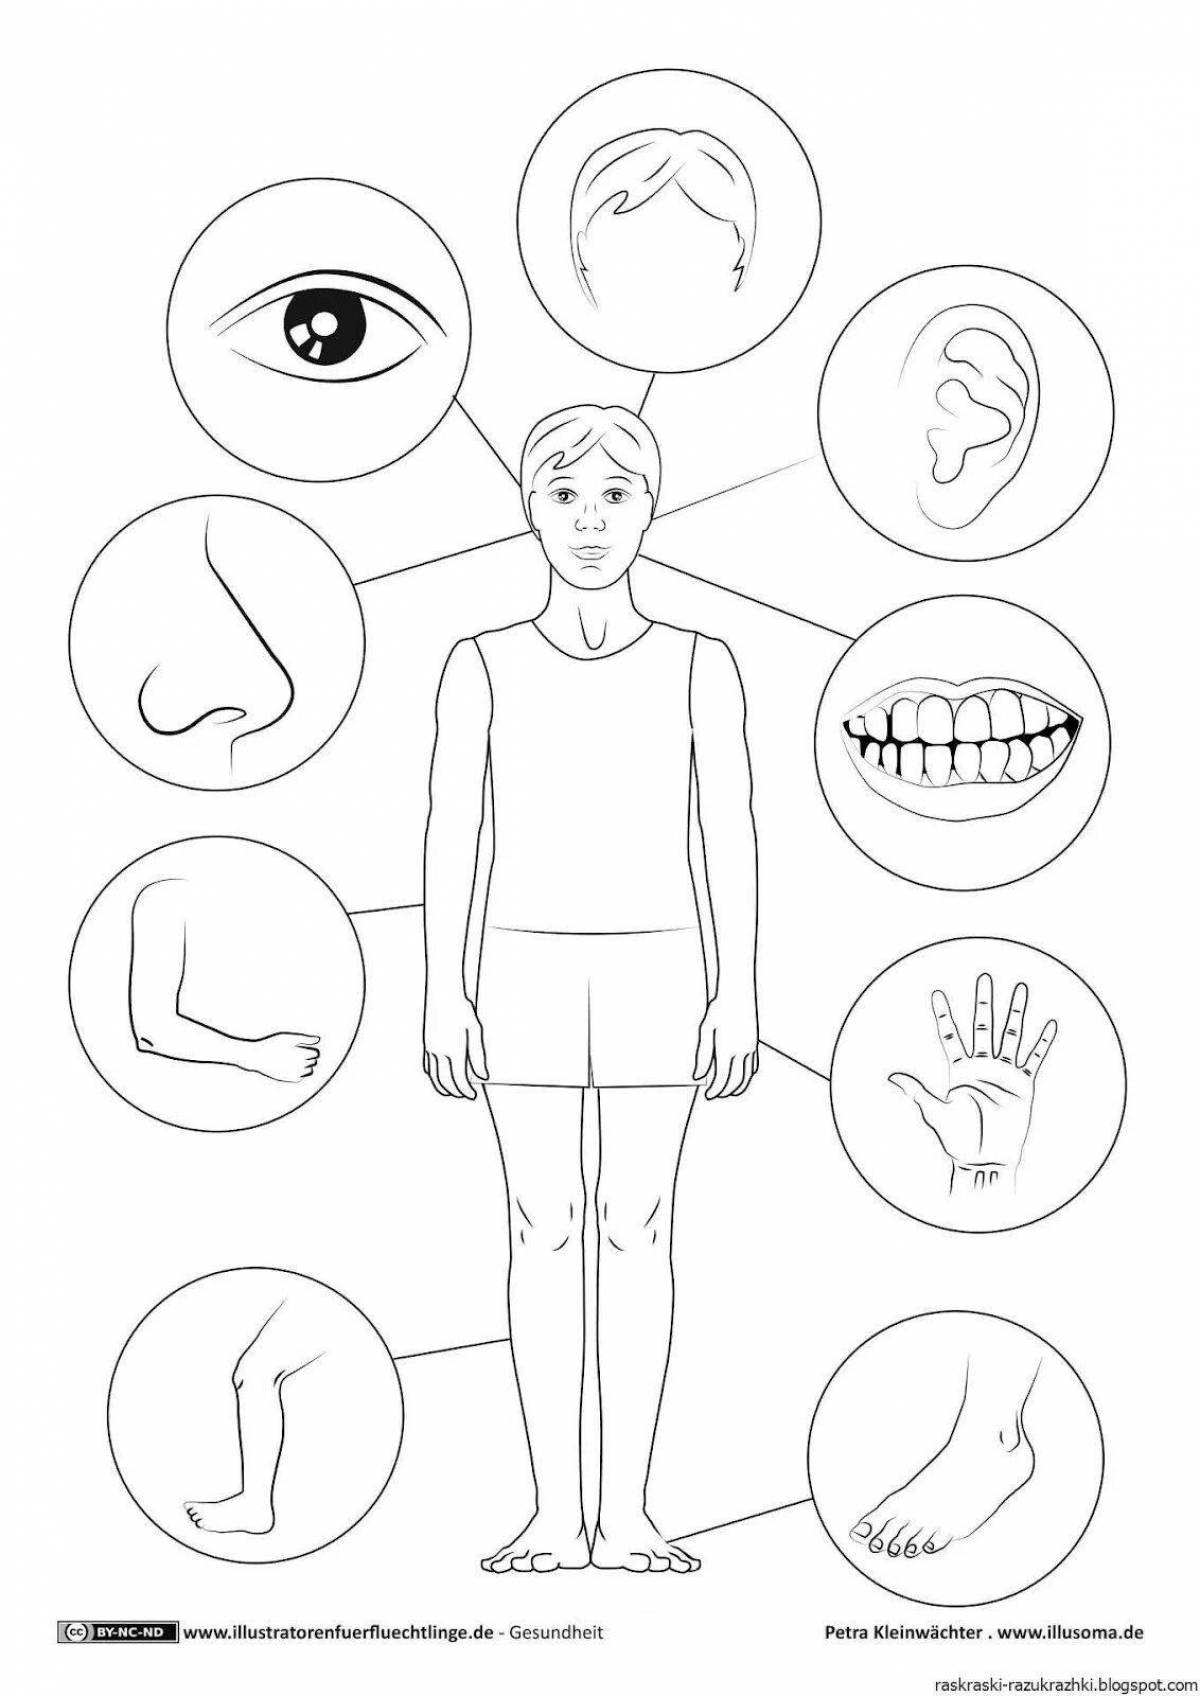 Изображения по запросу Раскраски внутренних органов человеческого тела - страница 8